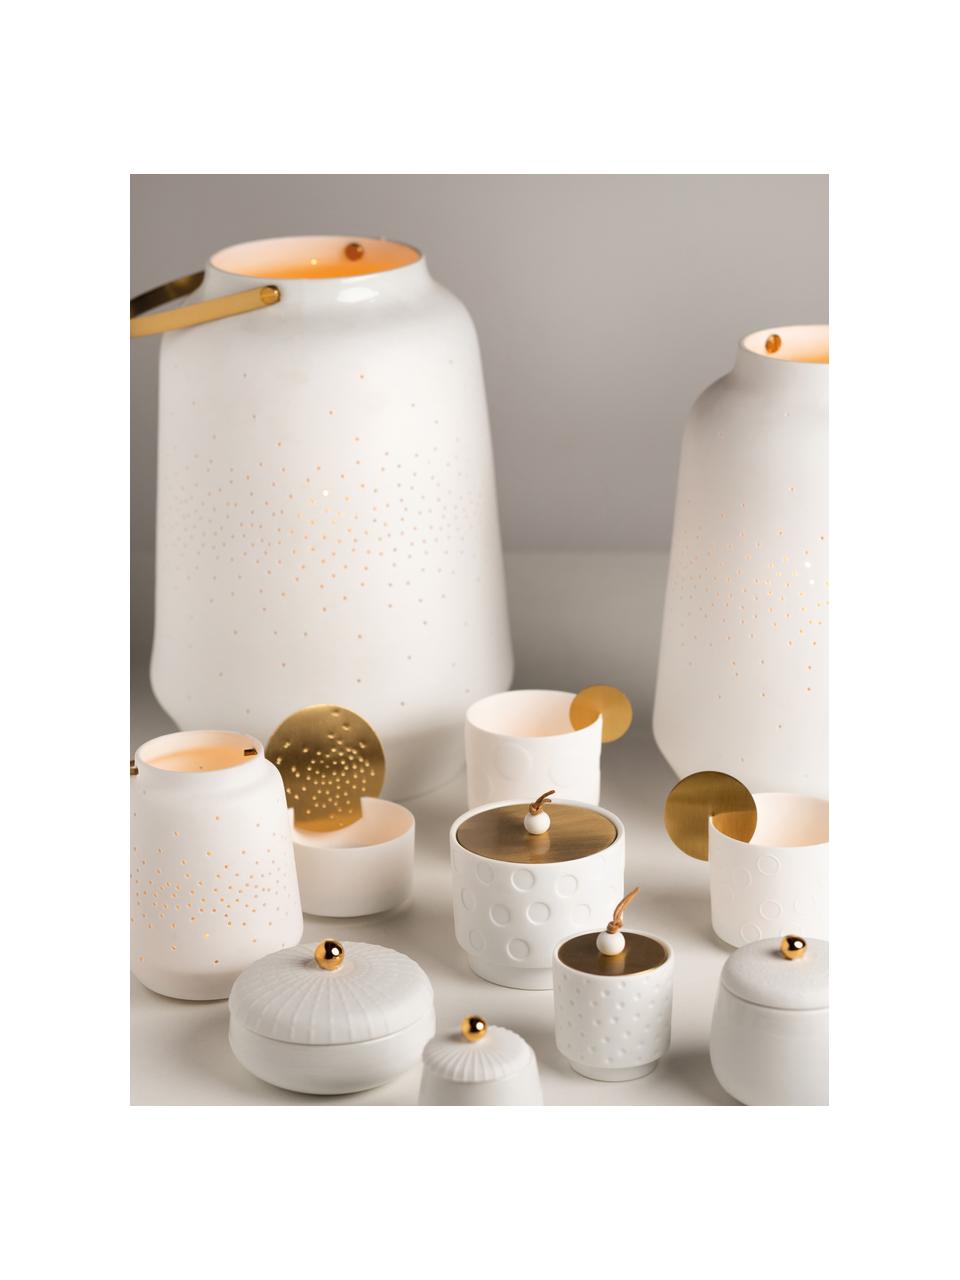 Porzellan-Teelichthalter Malina in Weiß, Griff: Metall, beschichtet, Weiß, Ø 11 x H 14 cm